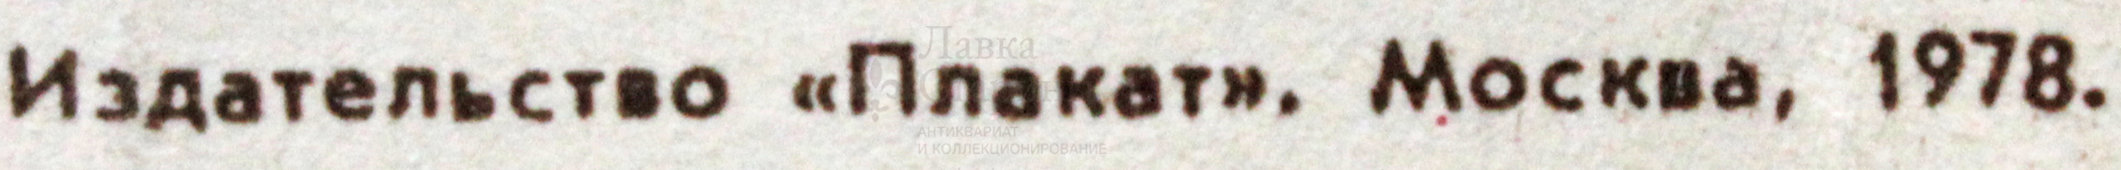 Советский агитационный плакат «И я стану механизатором!», художник В. Вотрин, 1978 г.